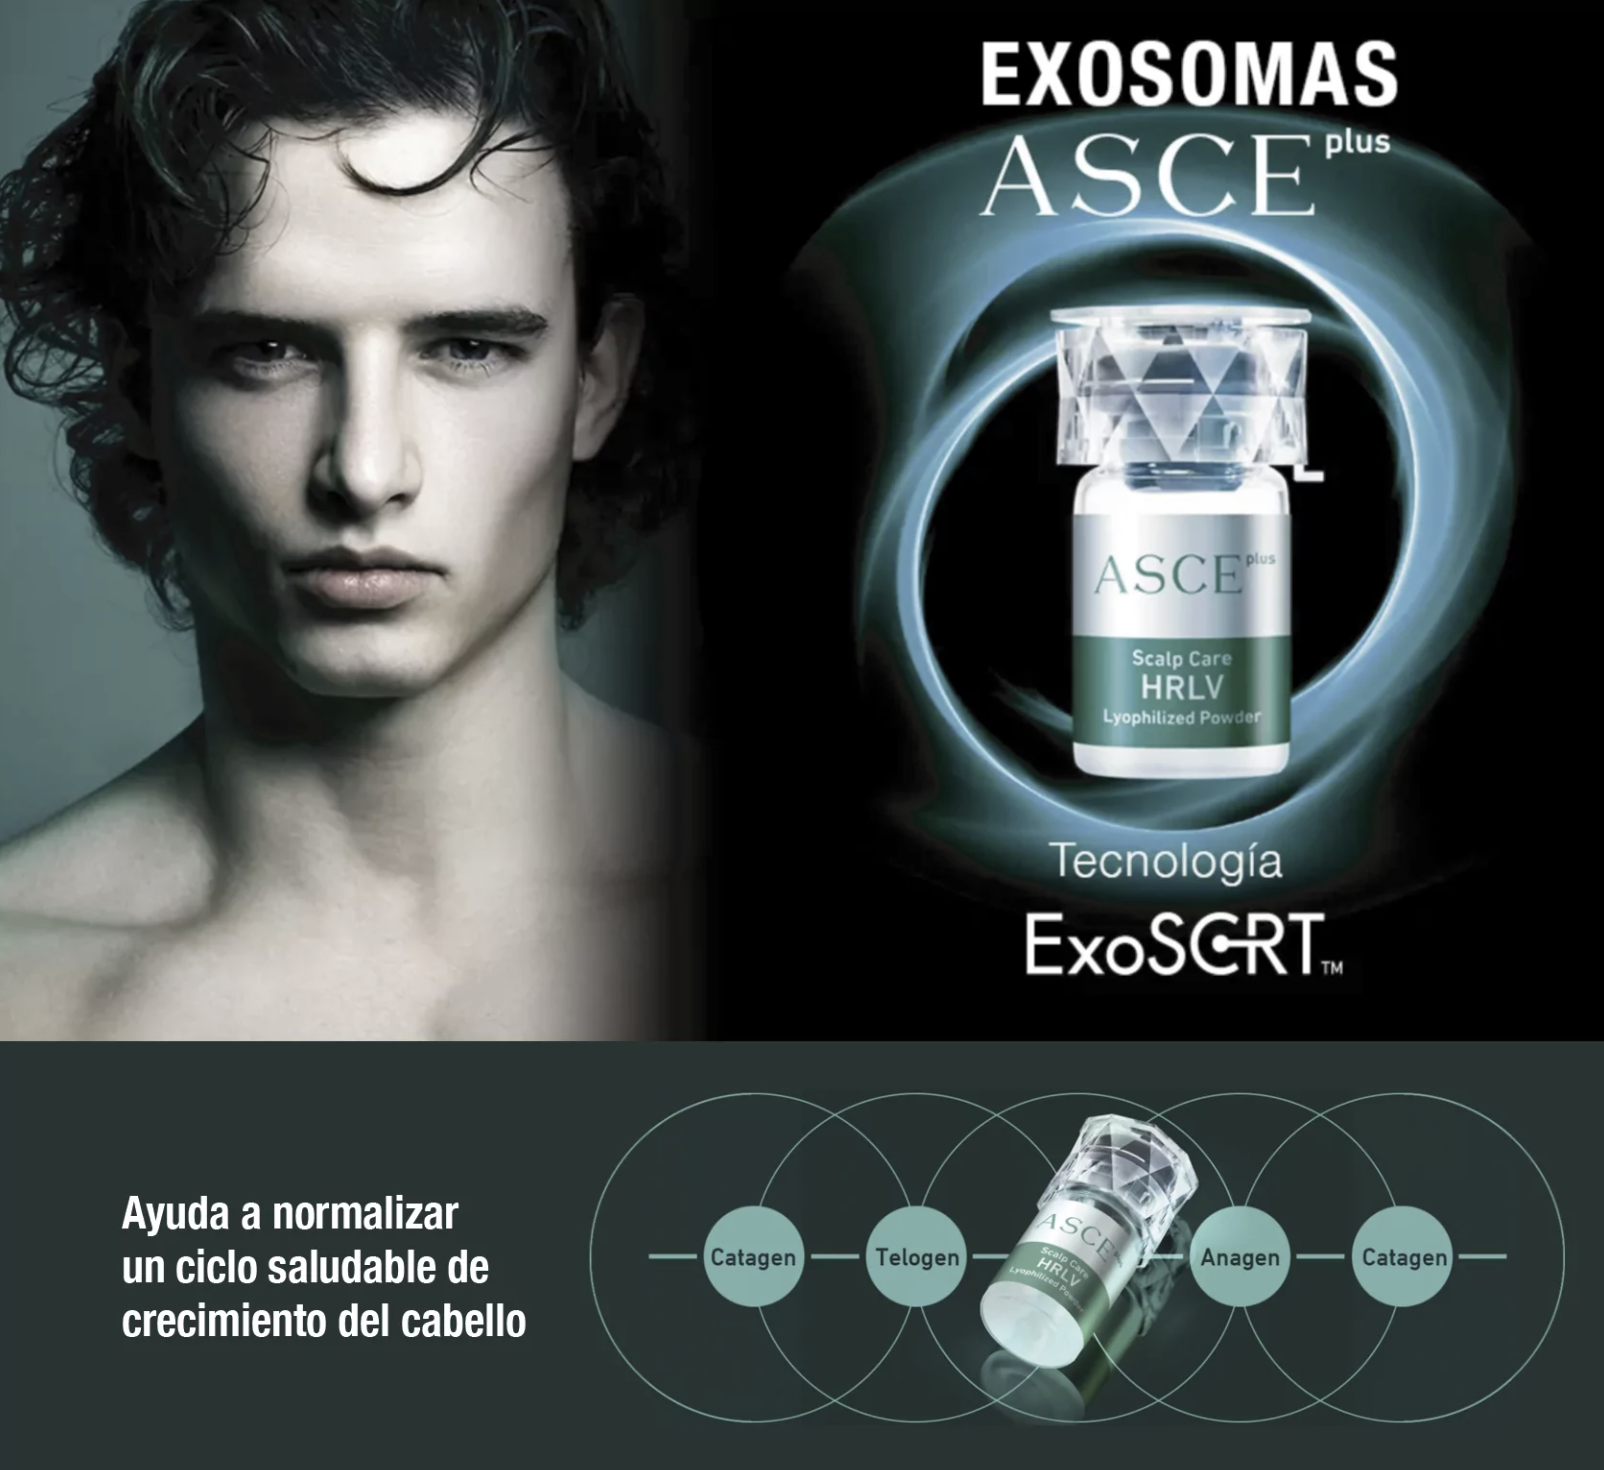 exosomas asceplus hrlv 10.000 Millones de Exosomas solución Premium para reequilibrar y normalizar la perdida de cabello, el cuero cabelludo en todas sus capas. Epidermis, Dermis y Subcutis.